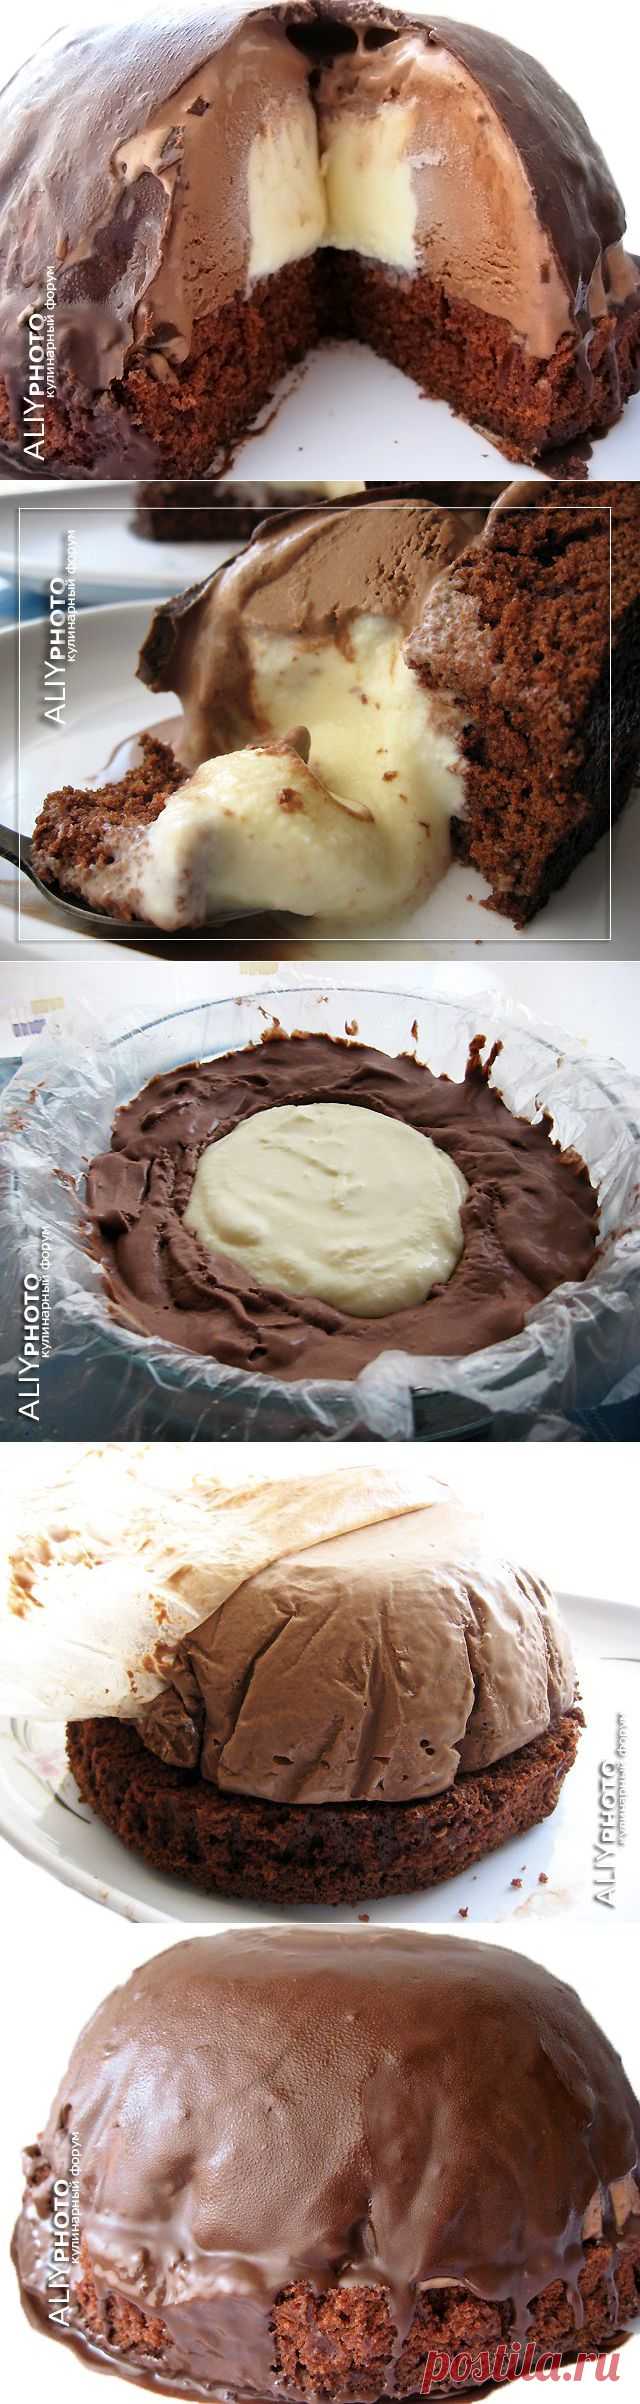 1. "Шоколадная бомба" (холодный десерт)